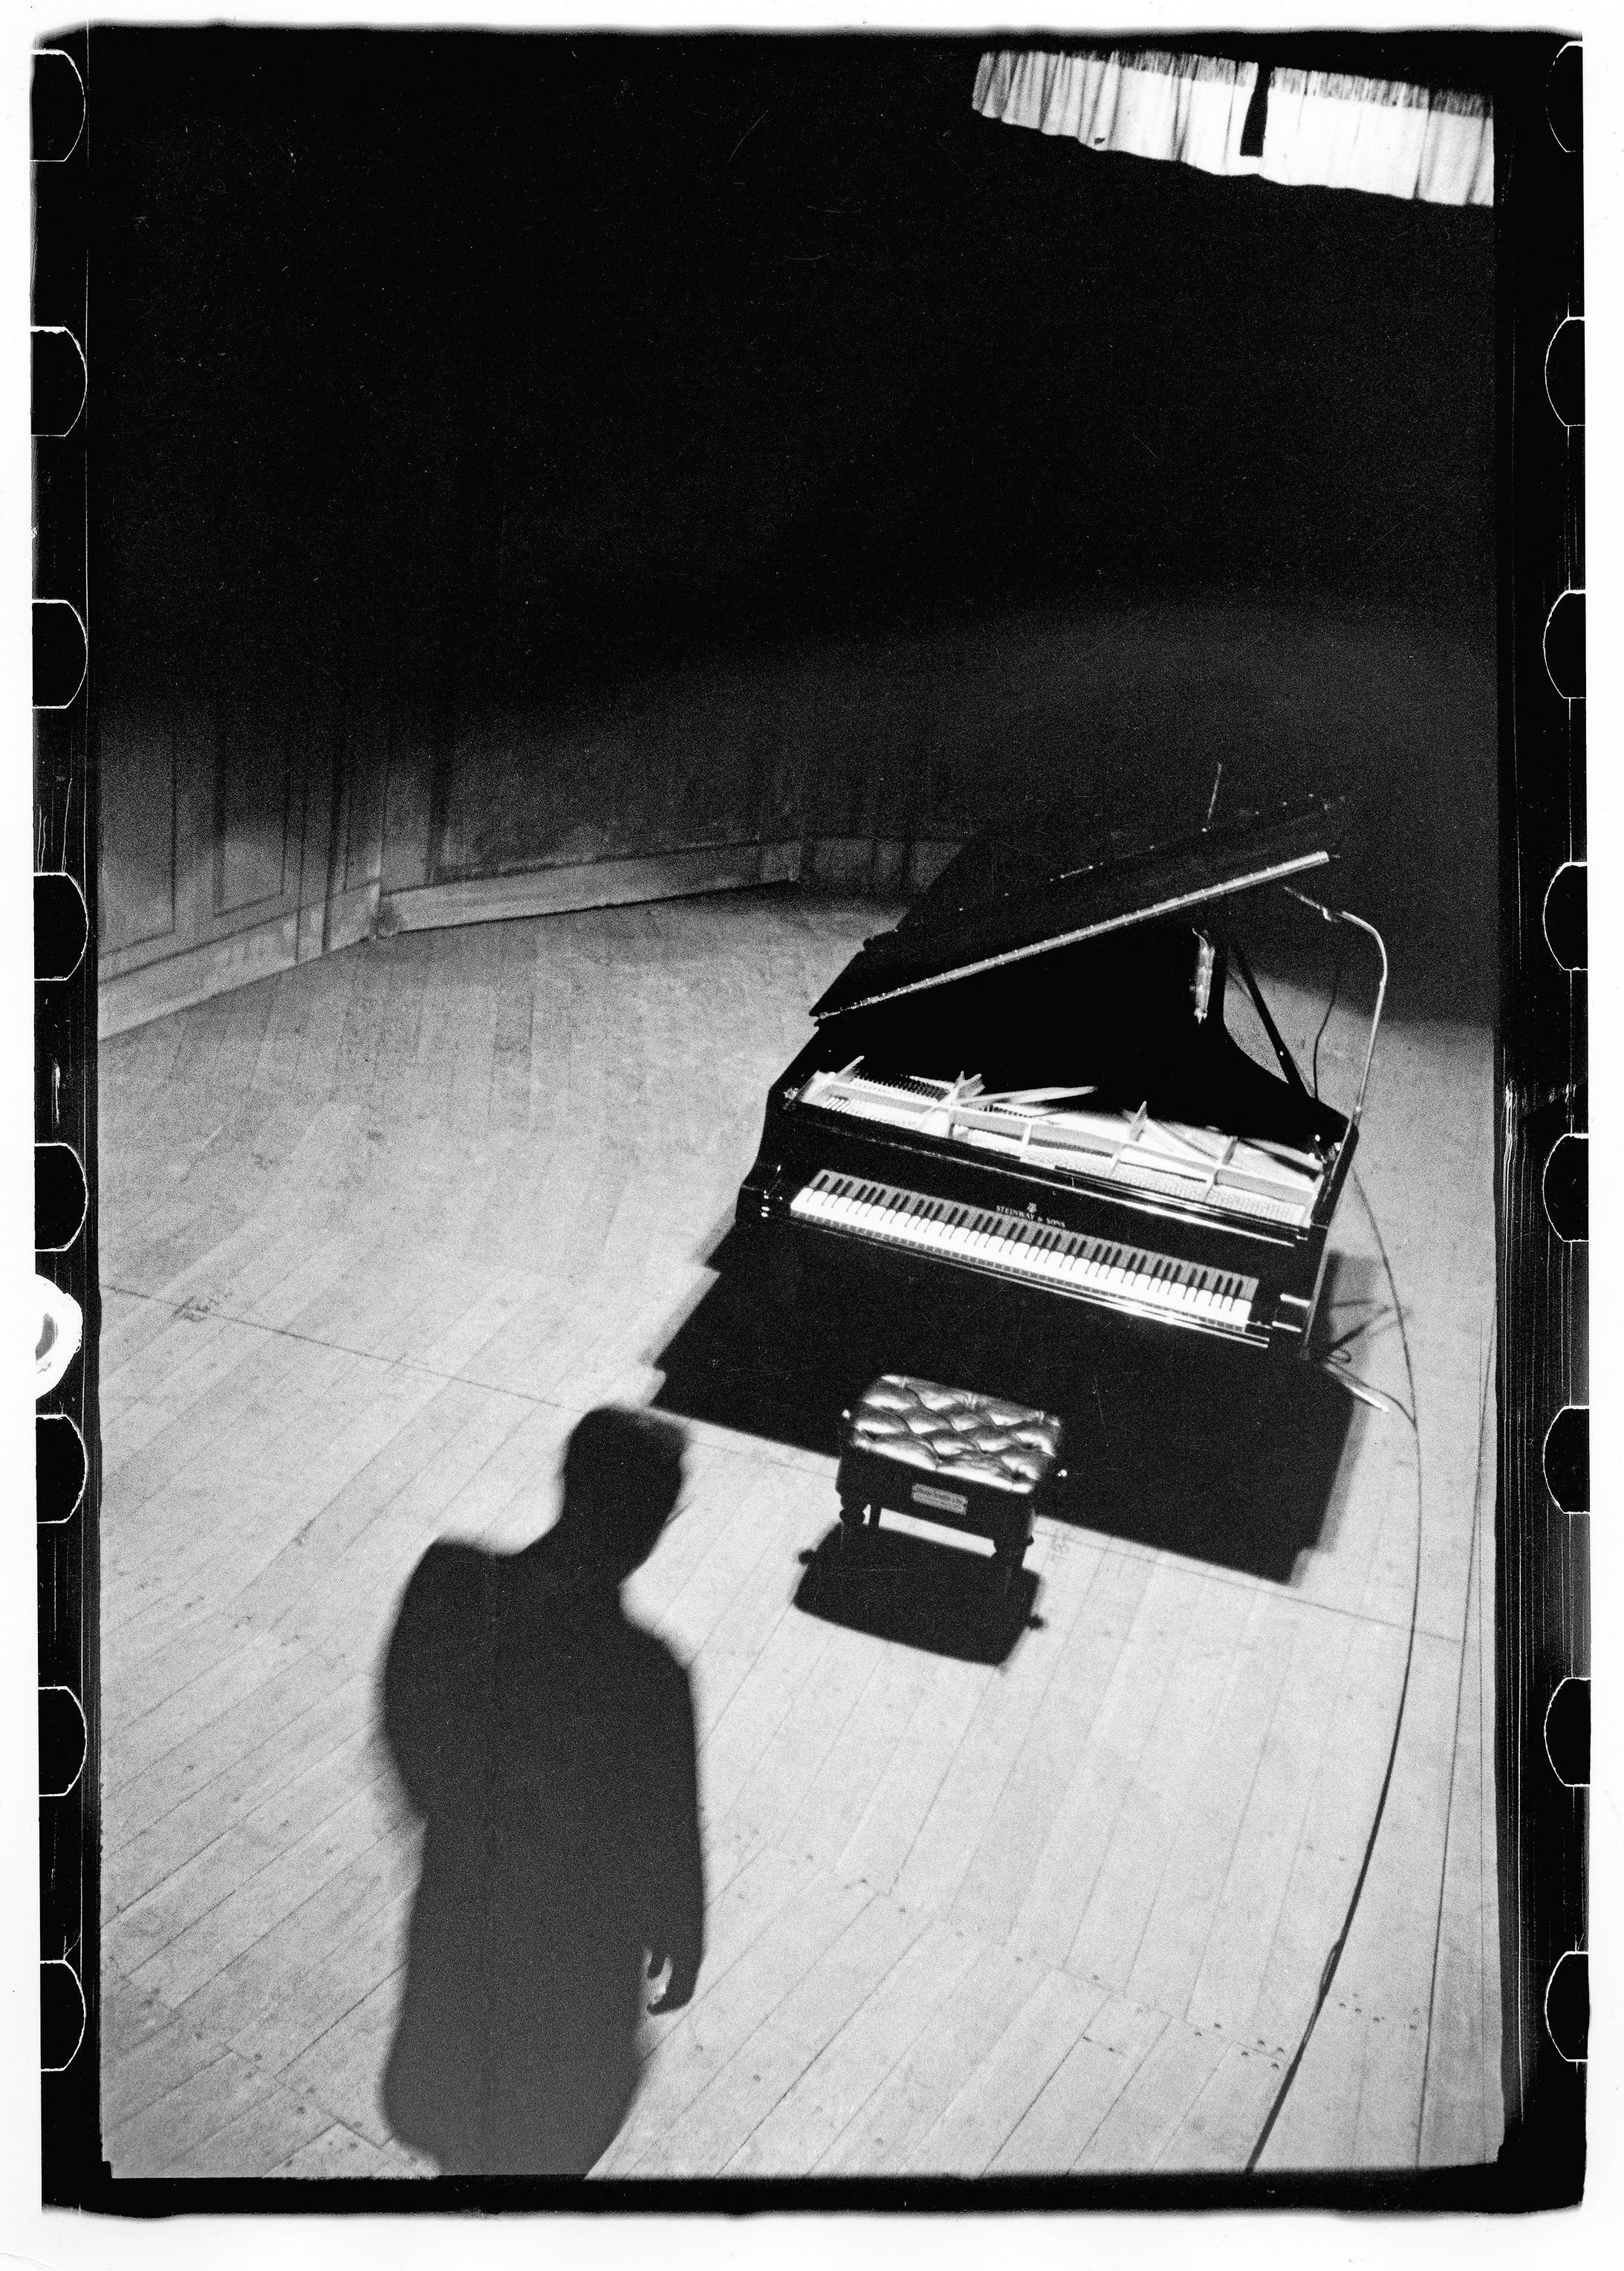 Friedrich Gulda bei seinem Konzert im Teatro Colón, Buenos Aires, 1949
Lisl Steiner, © Österreichische Nationalbibliothek Bildarchiv / Edition Lammerhuber